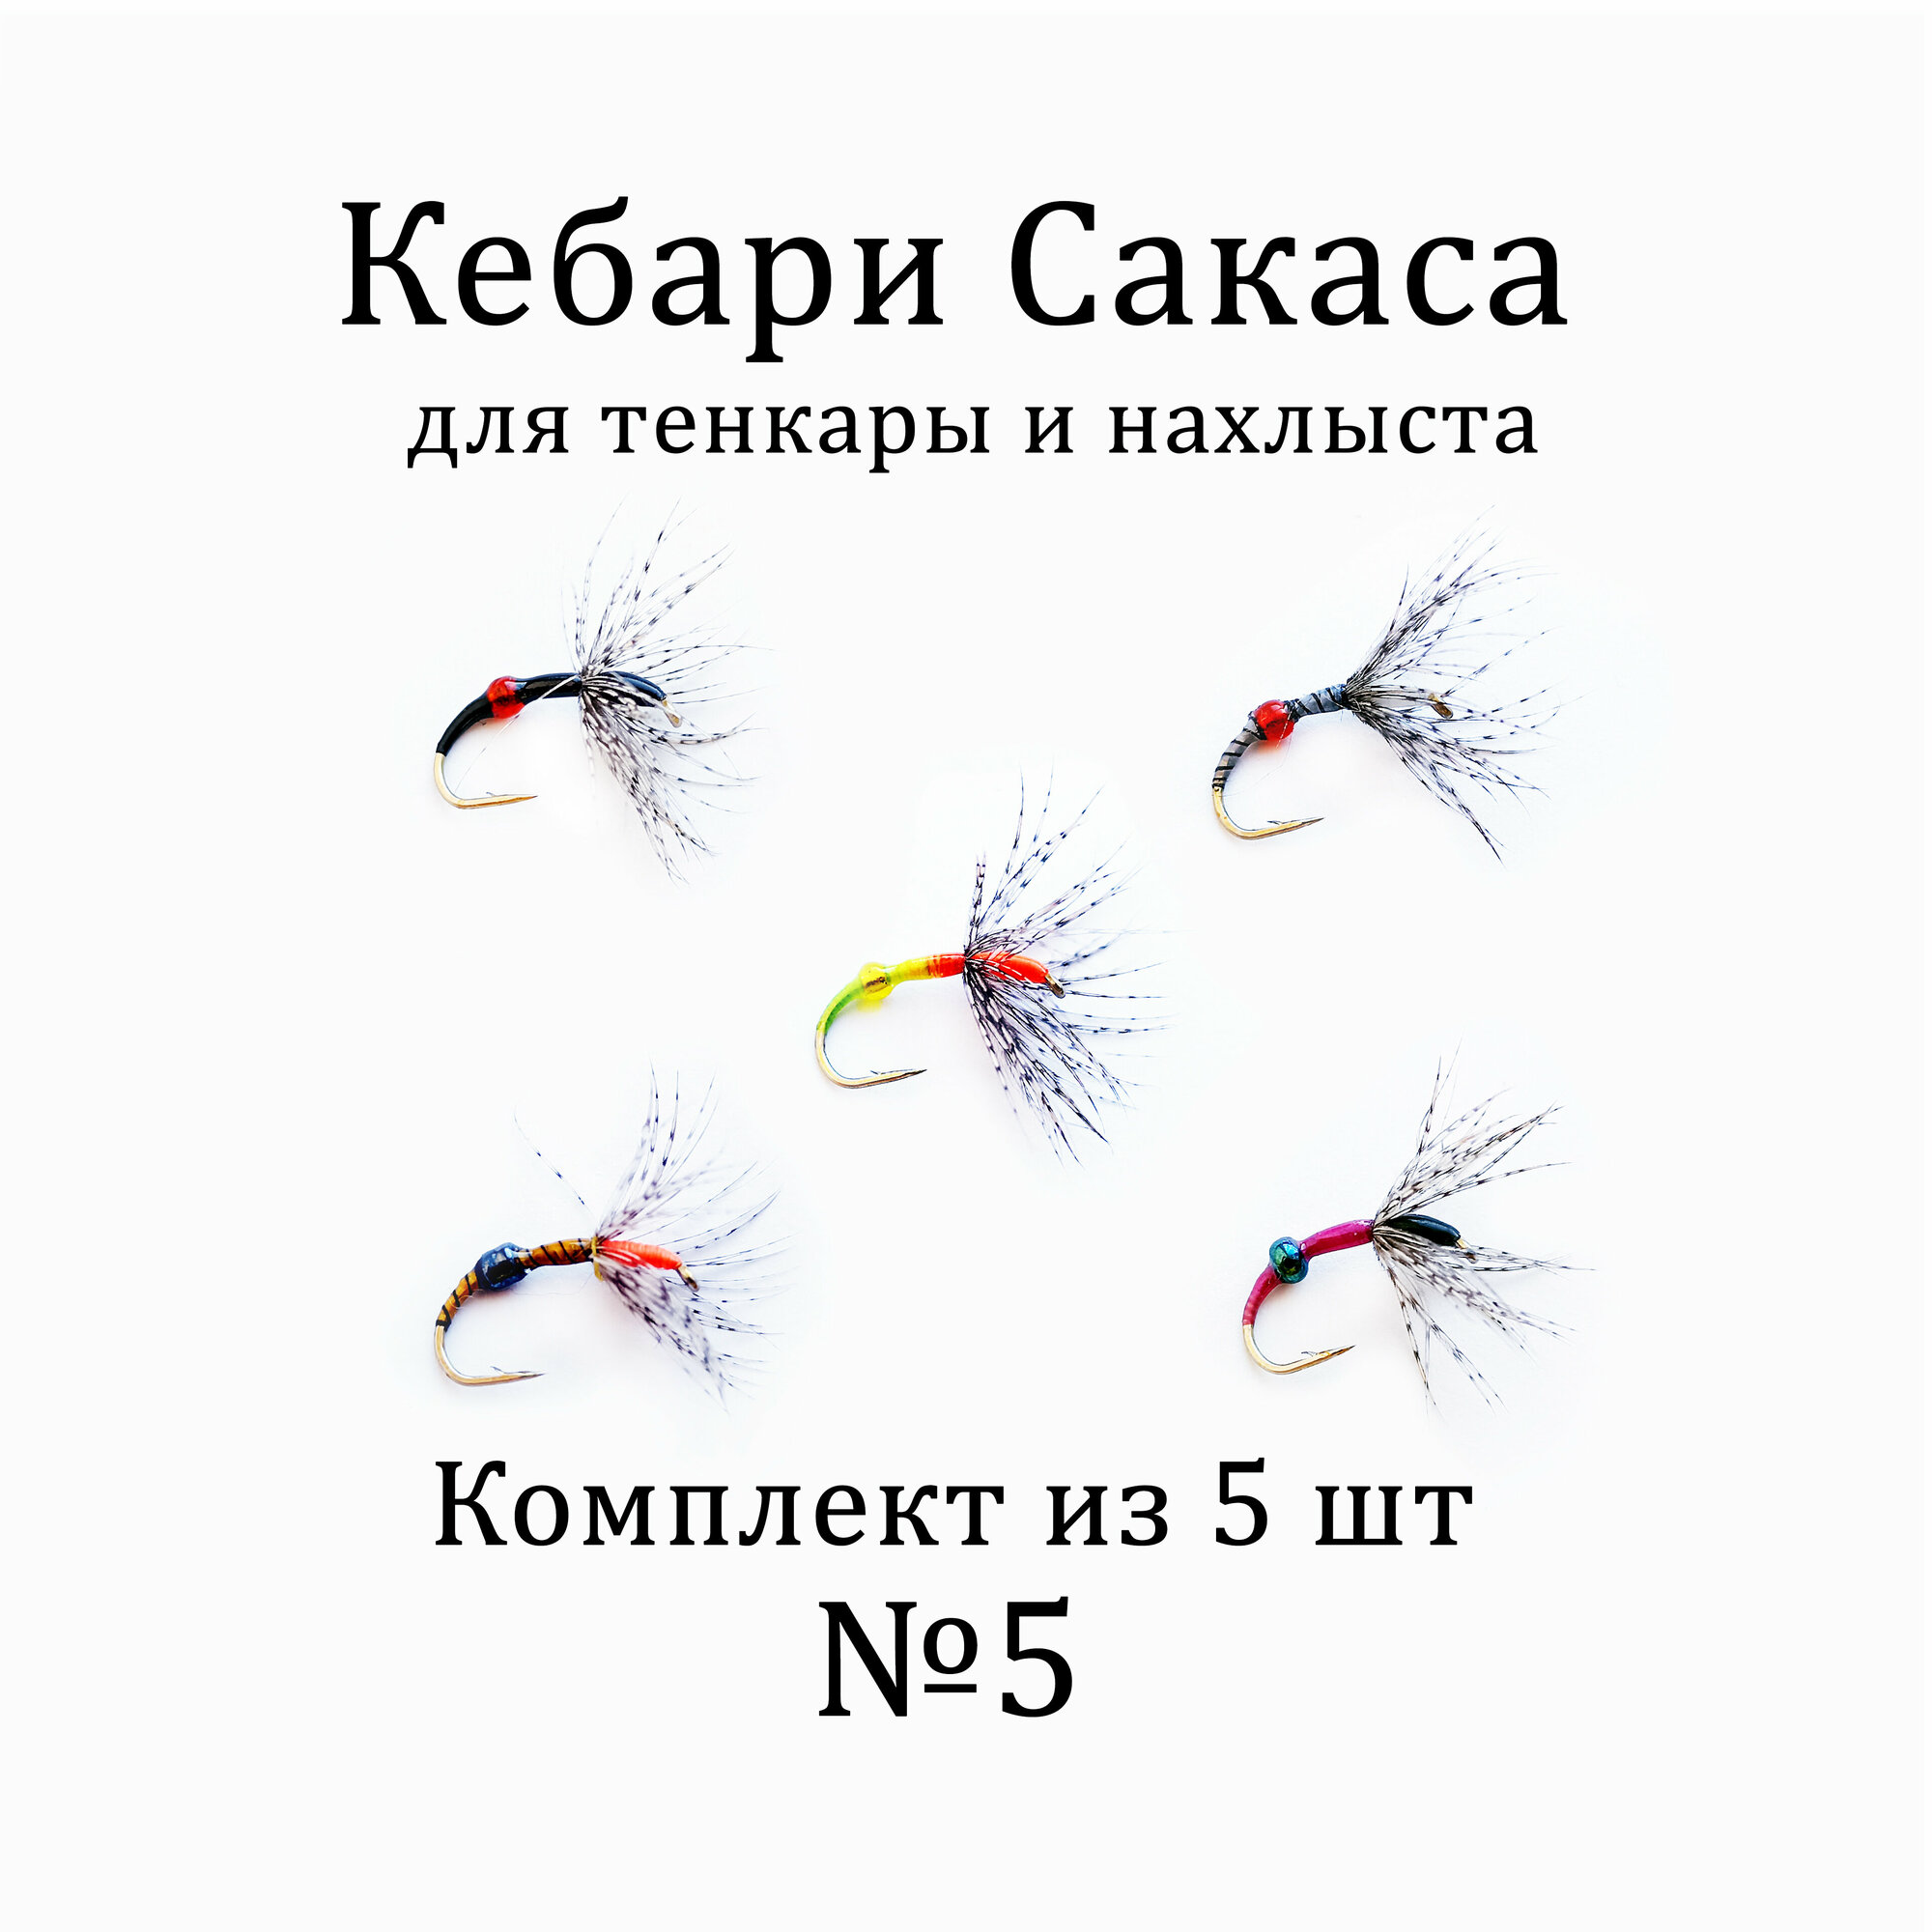 Мушки для тенкары и нахлыста - Кебари Сакаса комплект №5 (5 шт). Рыболовные мушки для рыбалки на хариуса, голавля, плотвы, язя и другой рыбы, универсальные.